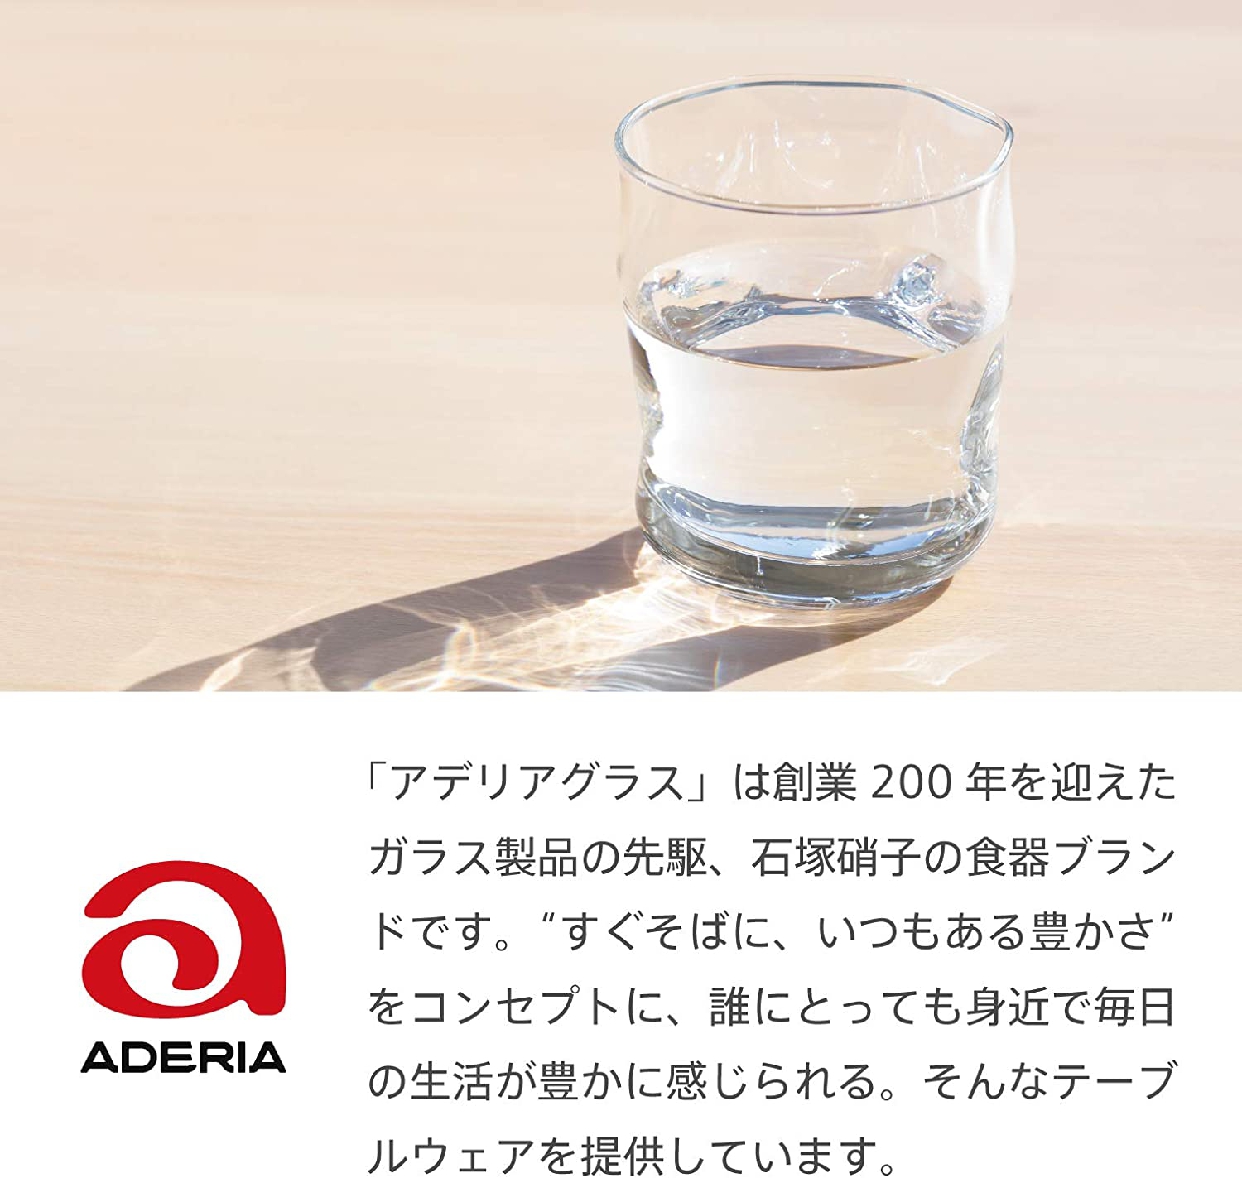 ADERIA(アデリア) ビールジョッキ クリアの商品画像6 